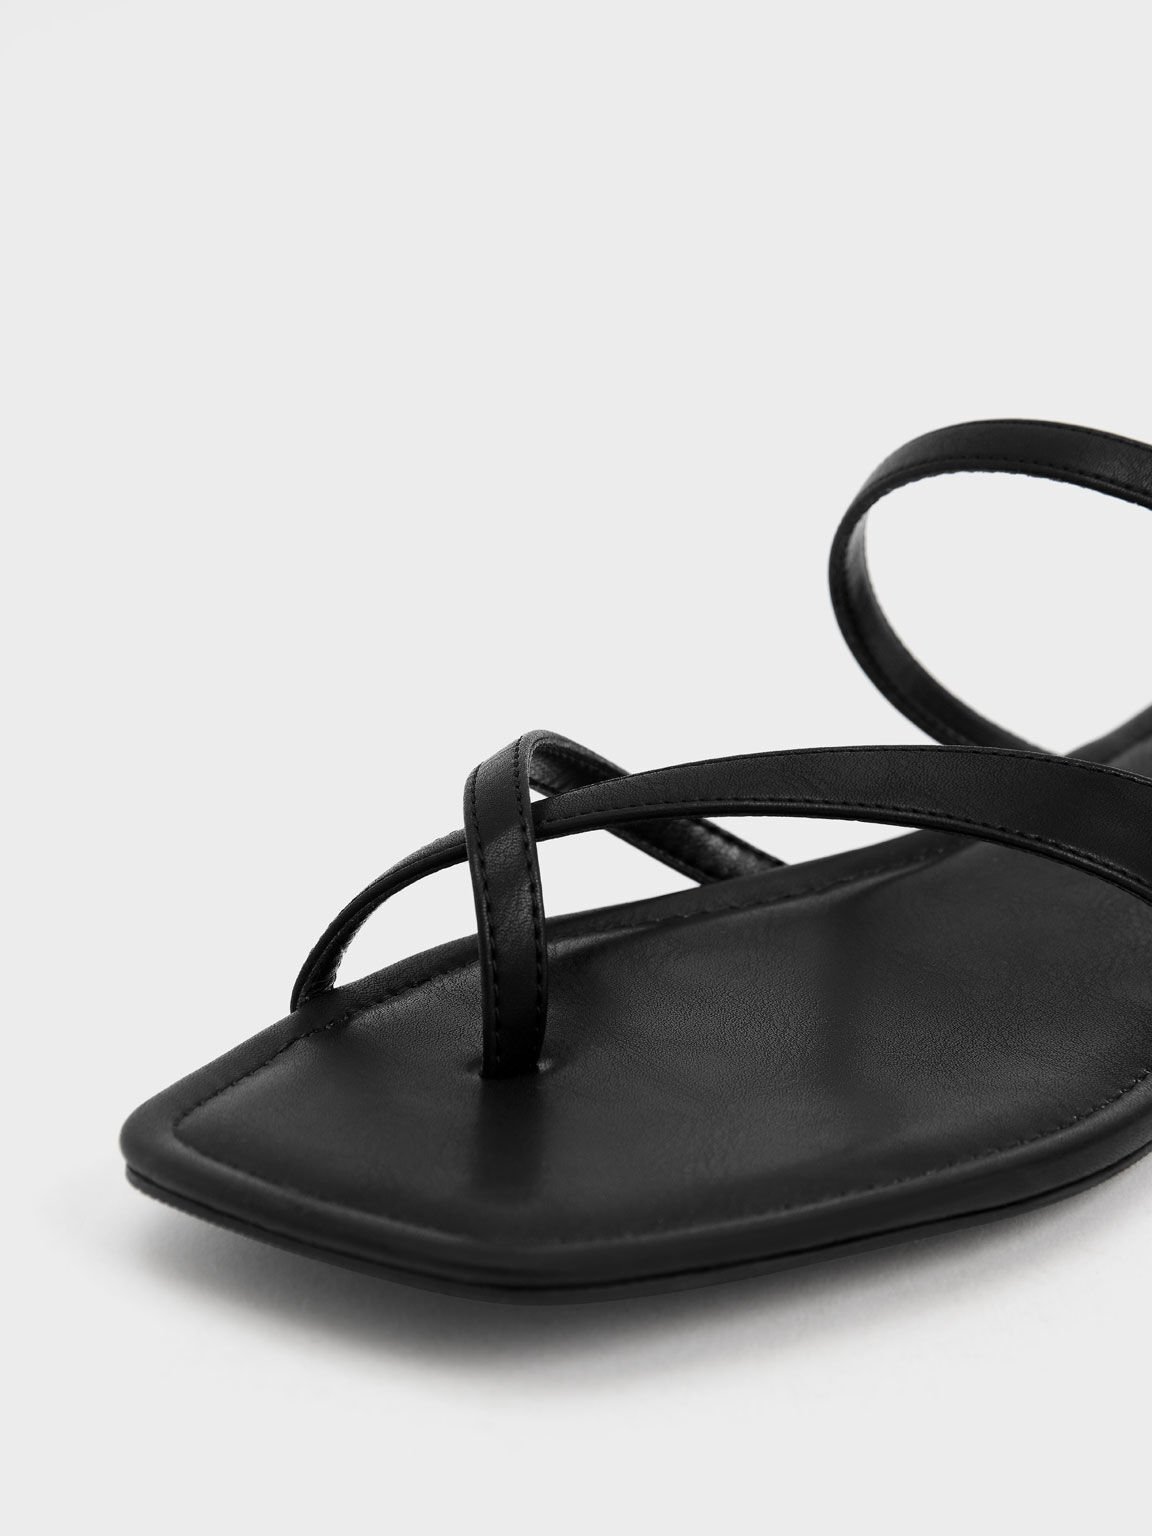 Toe-Loop Slide Sandals, Black, hi-res